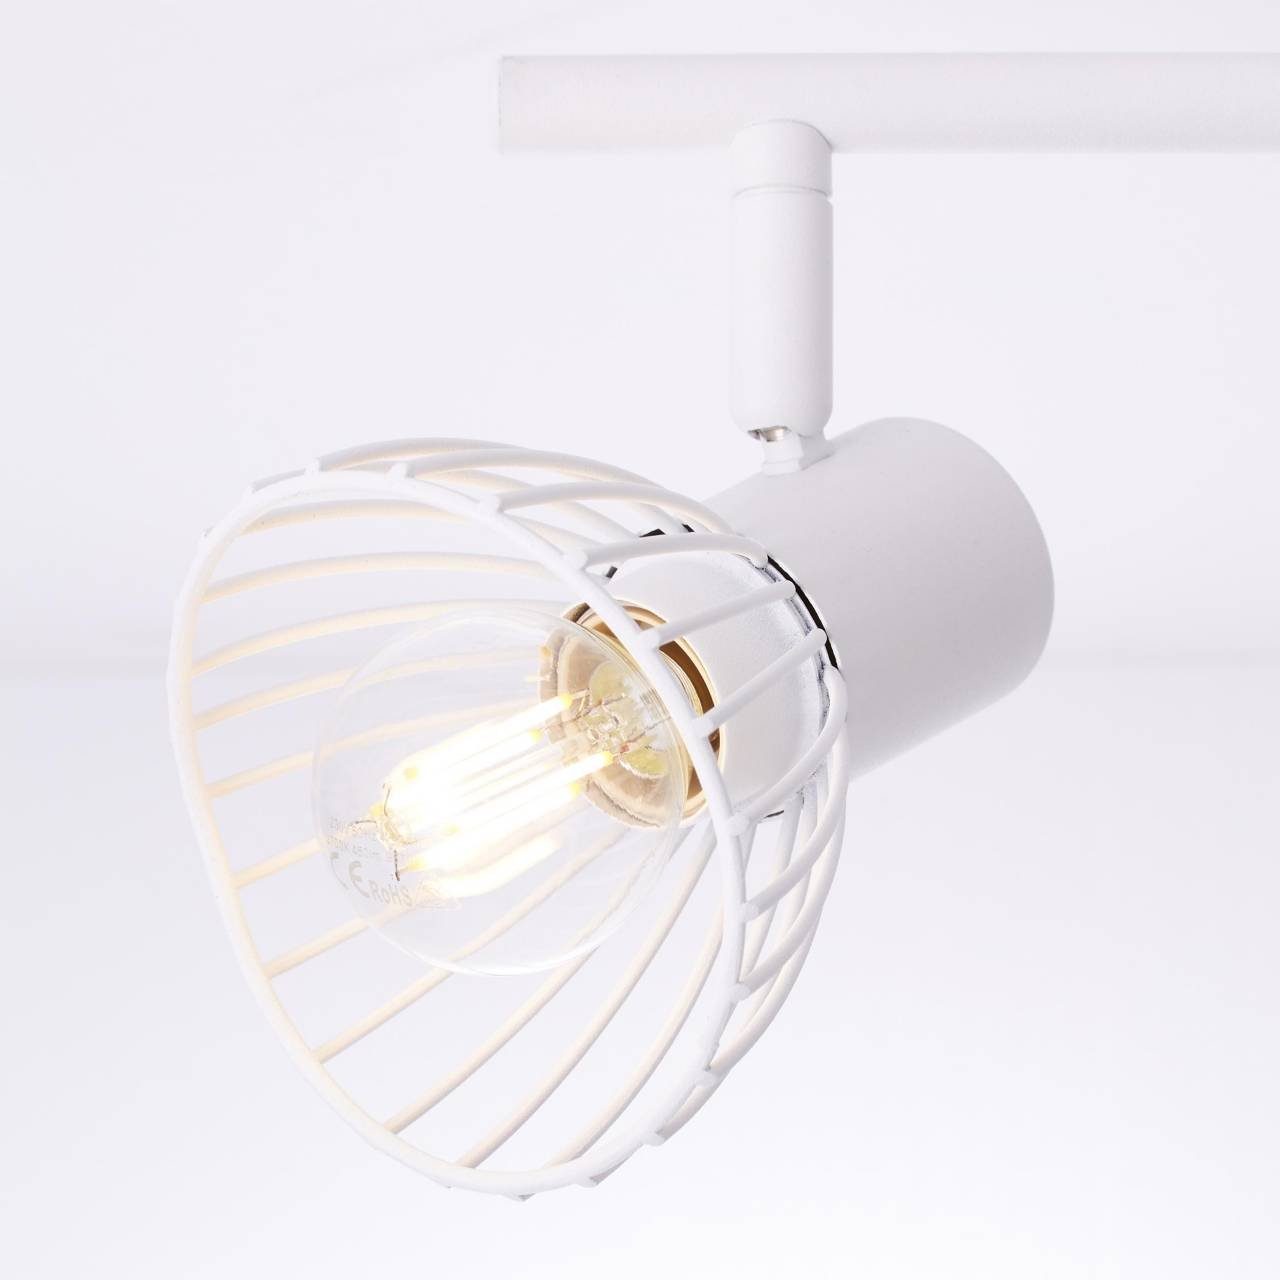 Elhi Brilliant Lampe 40W, Deckenleuchte geeignet 2x für Tropfen Elhi, E14, 2flg weiß D45, Spotrohr